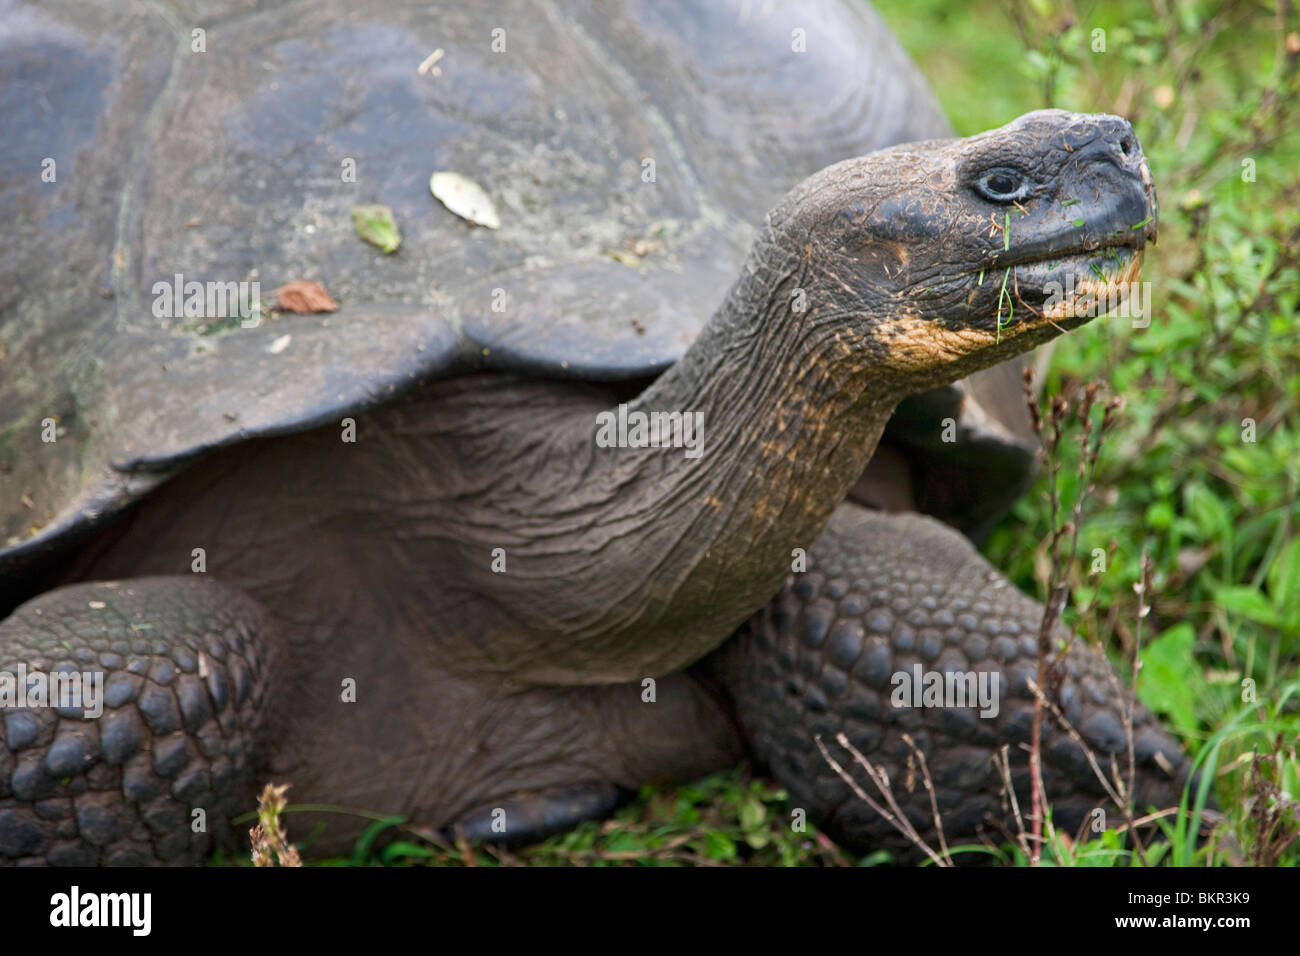 Îles Galapagos, une tortue géante qui après les îles Galapagos ont été nommés. Banque D'Images